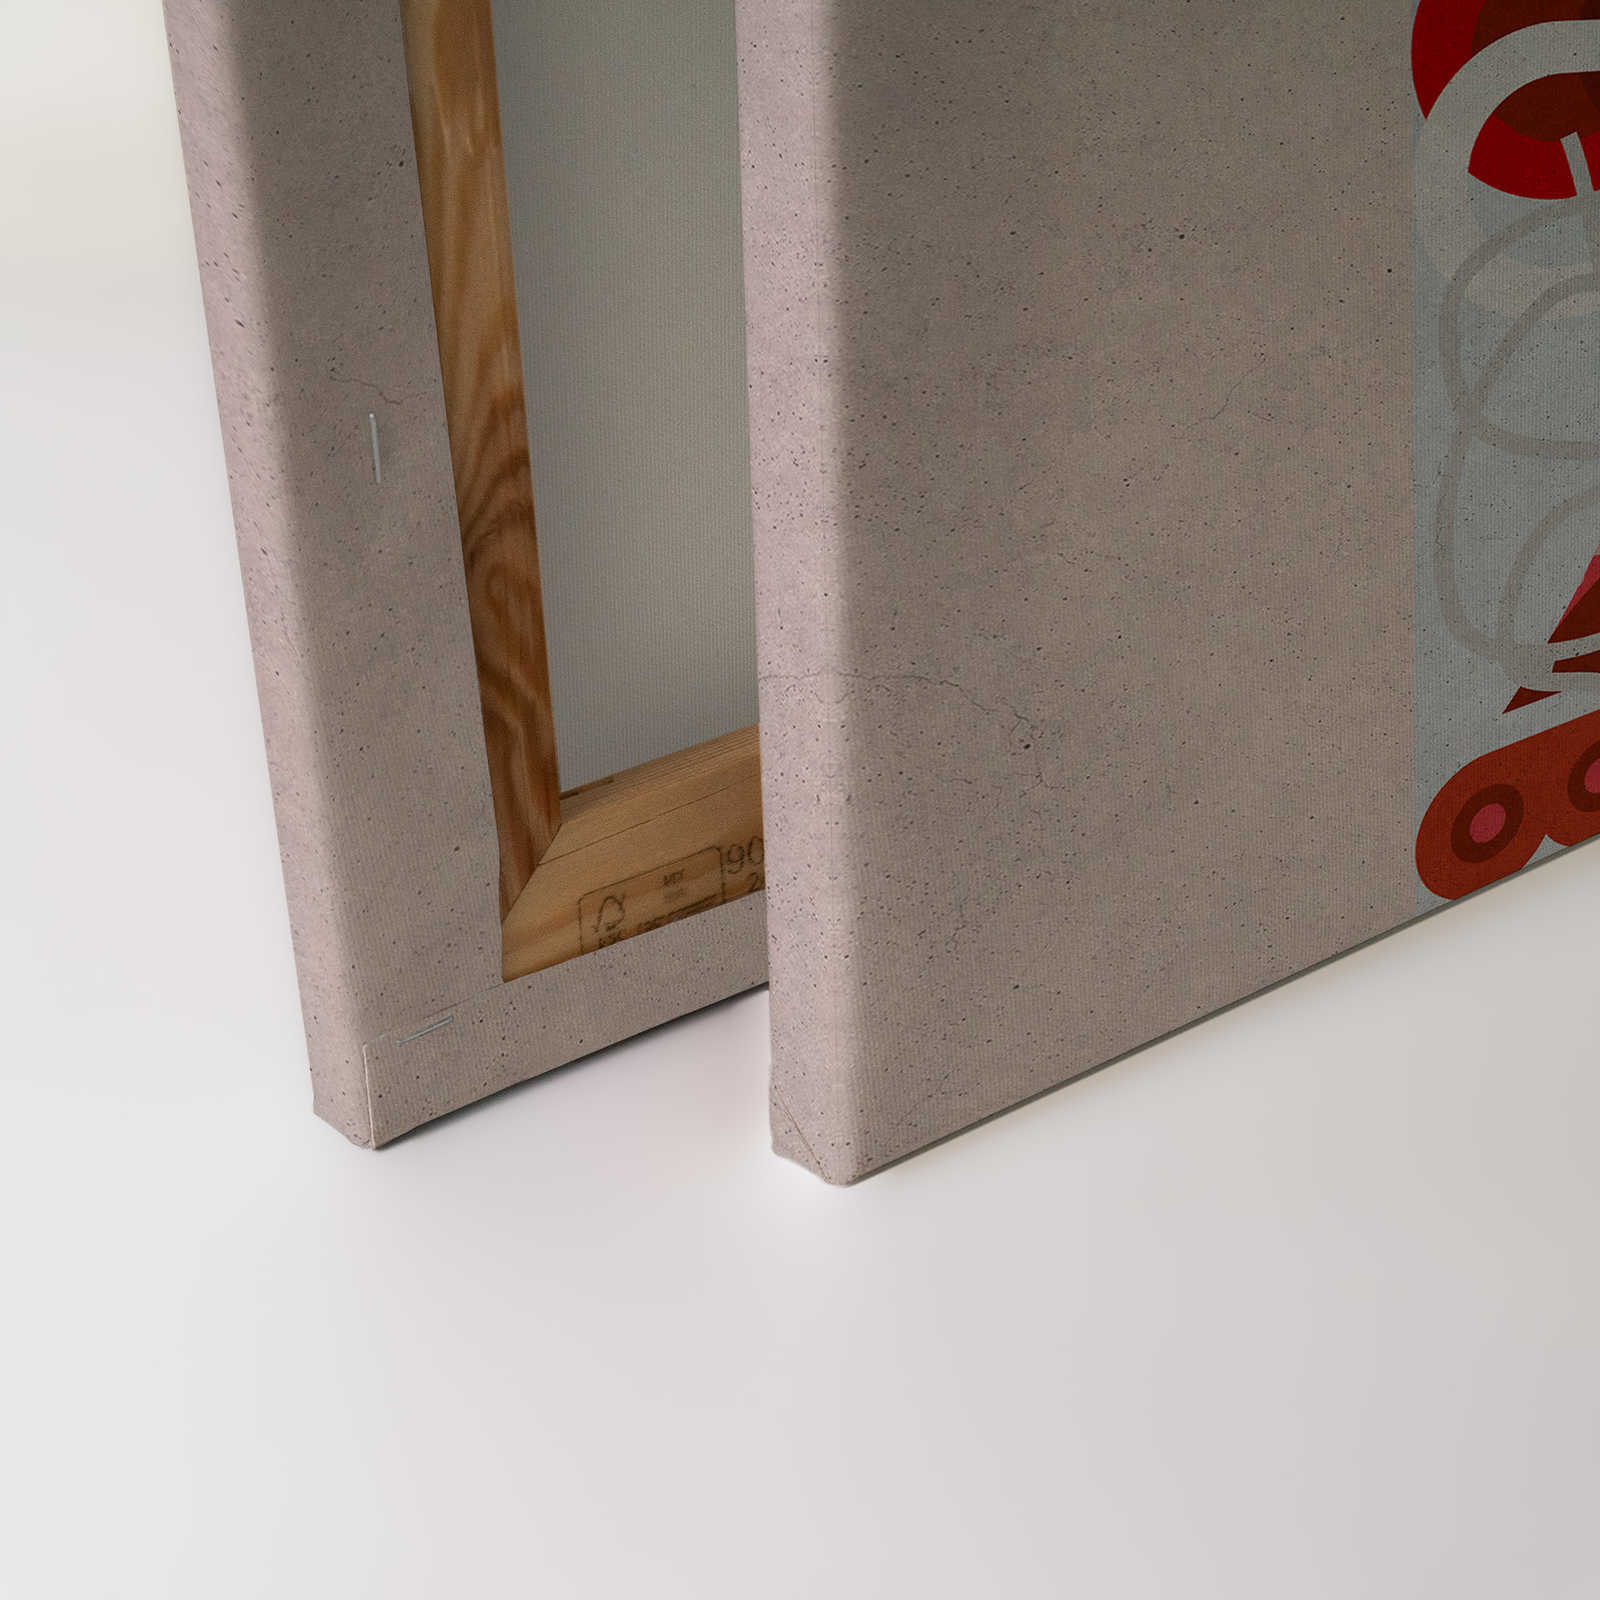             Coppie 3 - Quadro su tela Pop Art di coppie in struttura di cemento - 0,90 m x 0,60 m
        